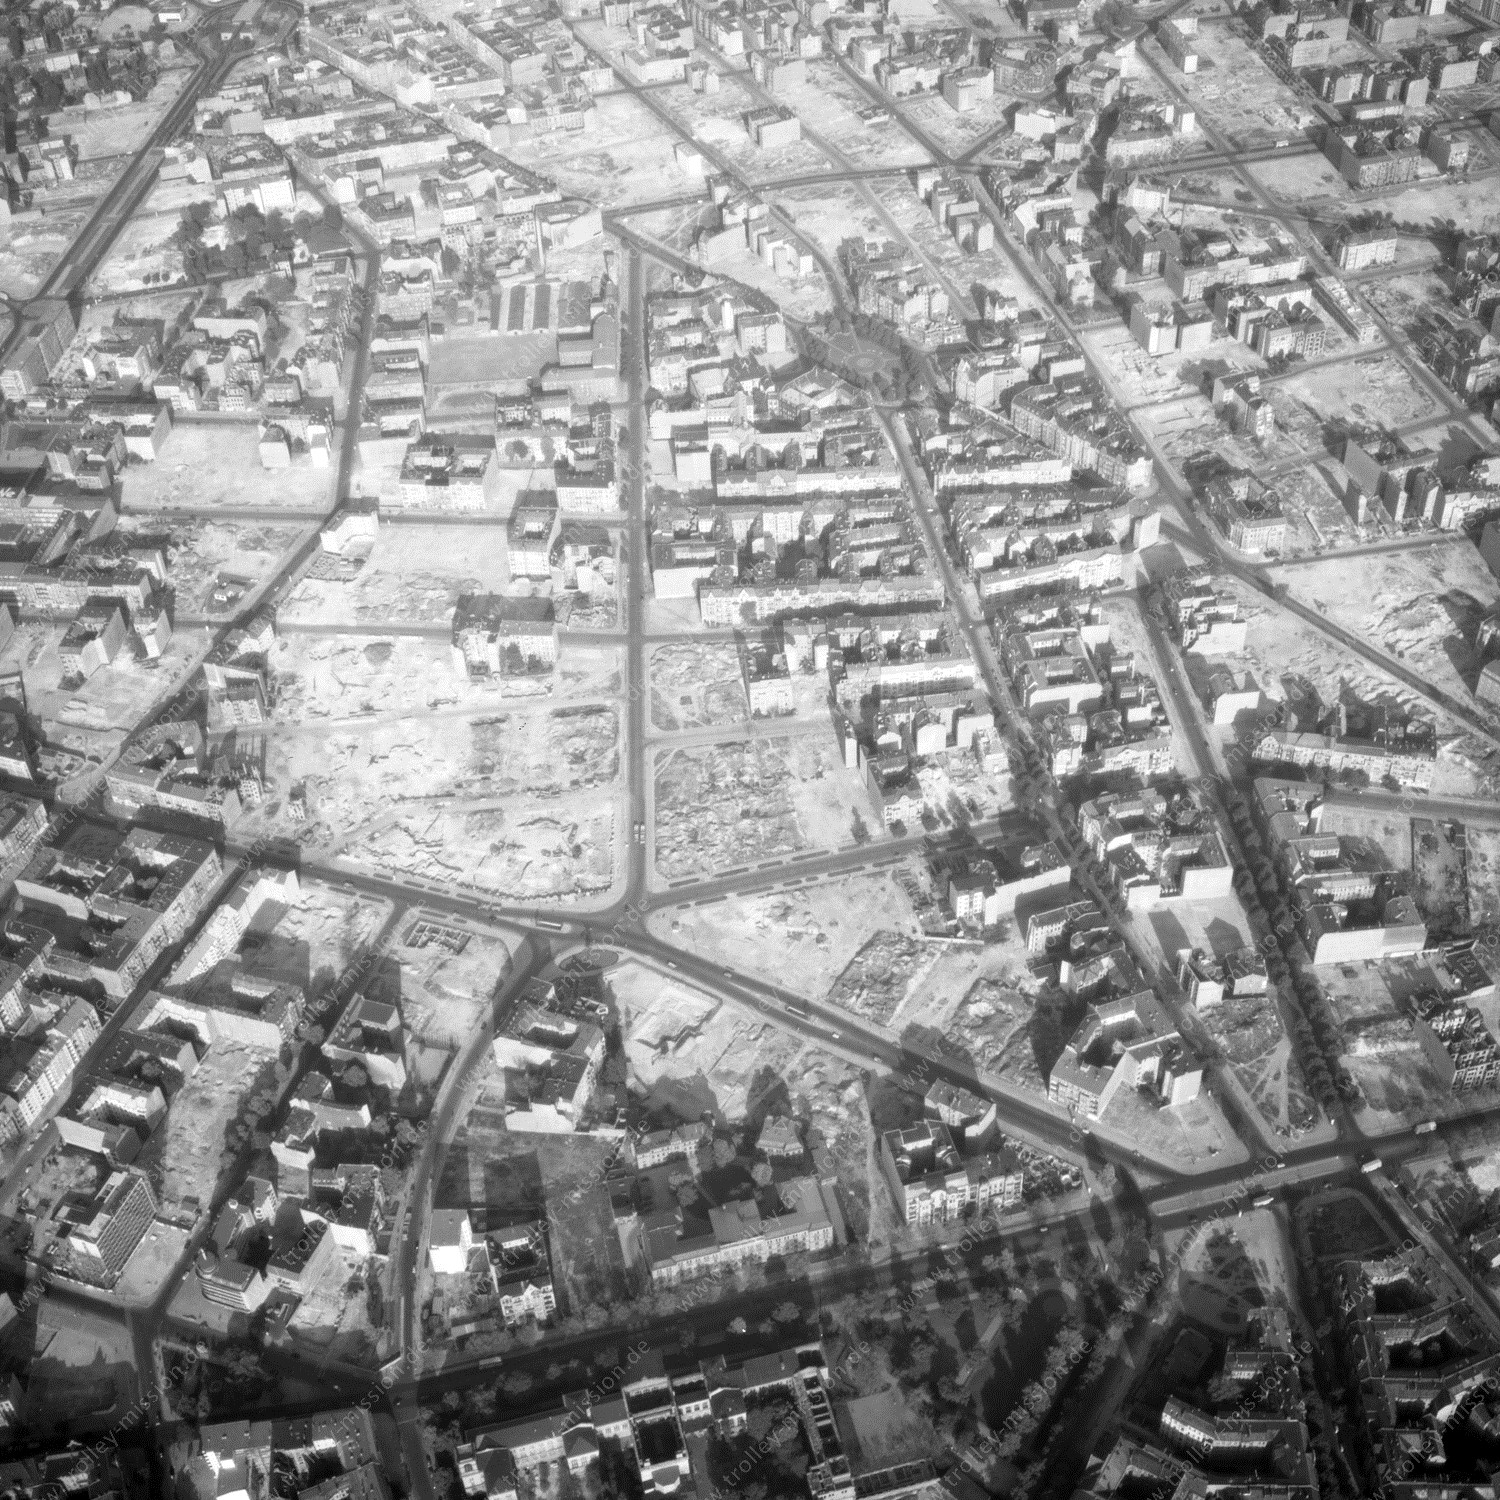 Alte Fotos und Luftbilder von Berlin - Luftbildaufnahme Nr. 09 - Historische Luftaufnahmen von West-Berlin aus dem Jahr 1954 - Flugstrecke Echo